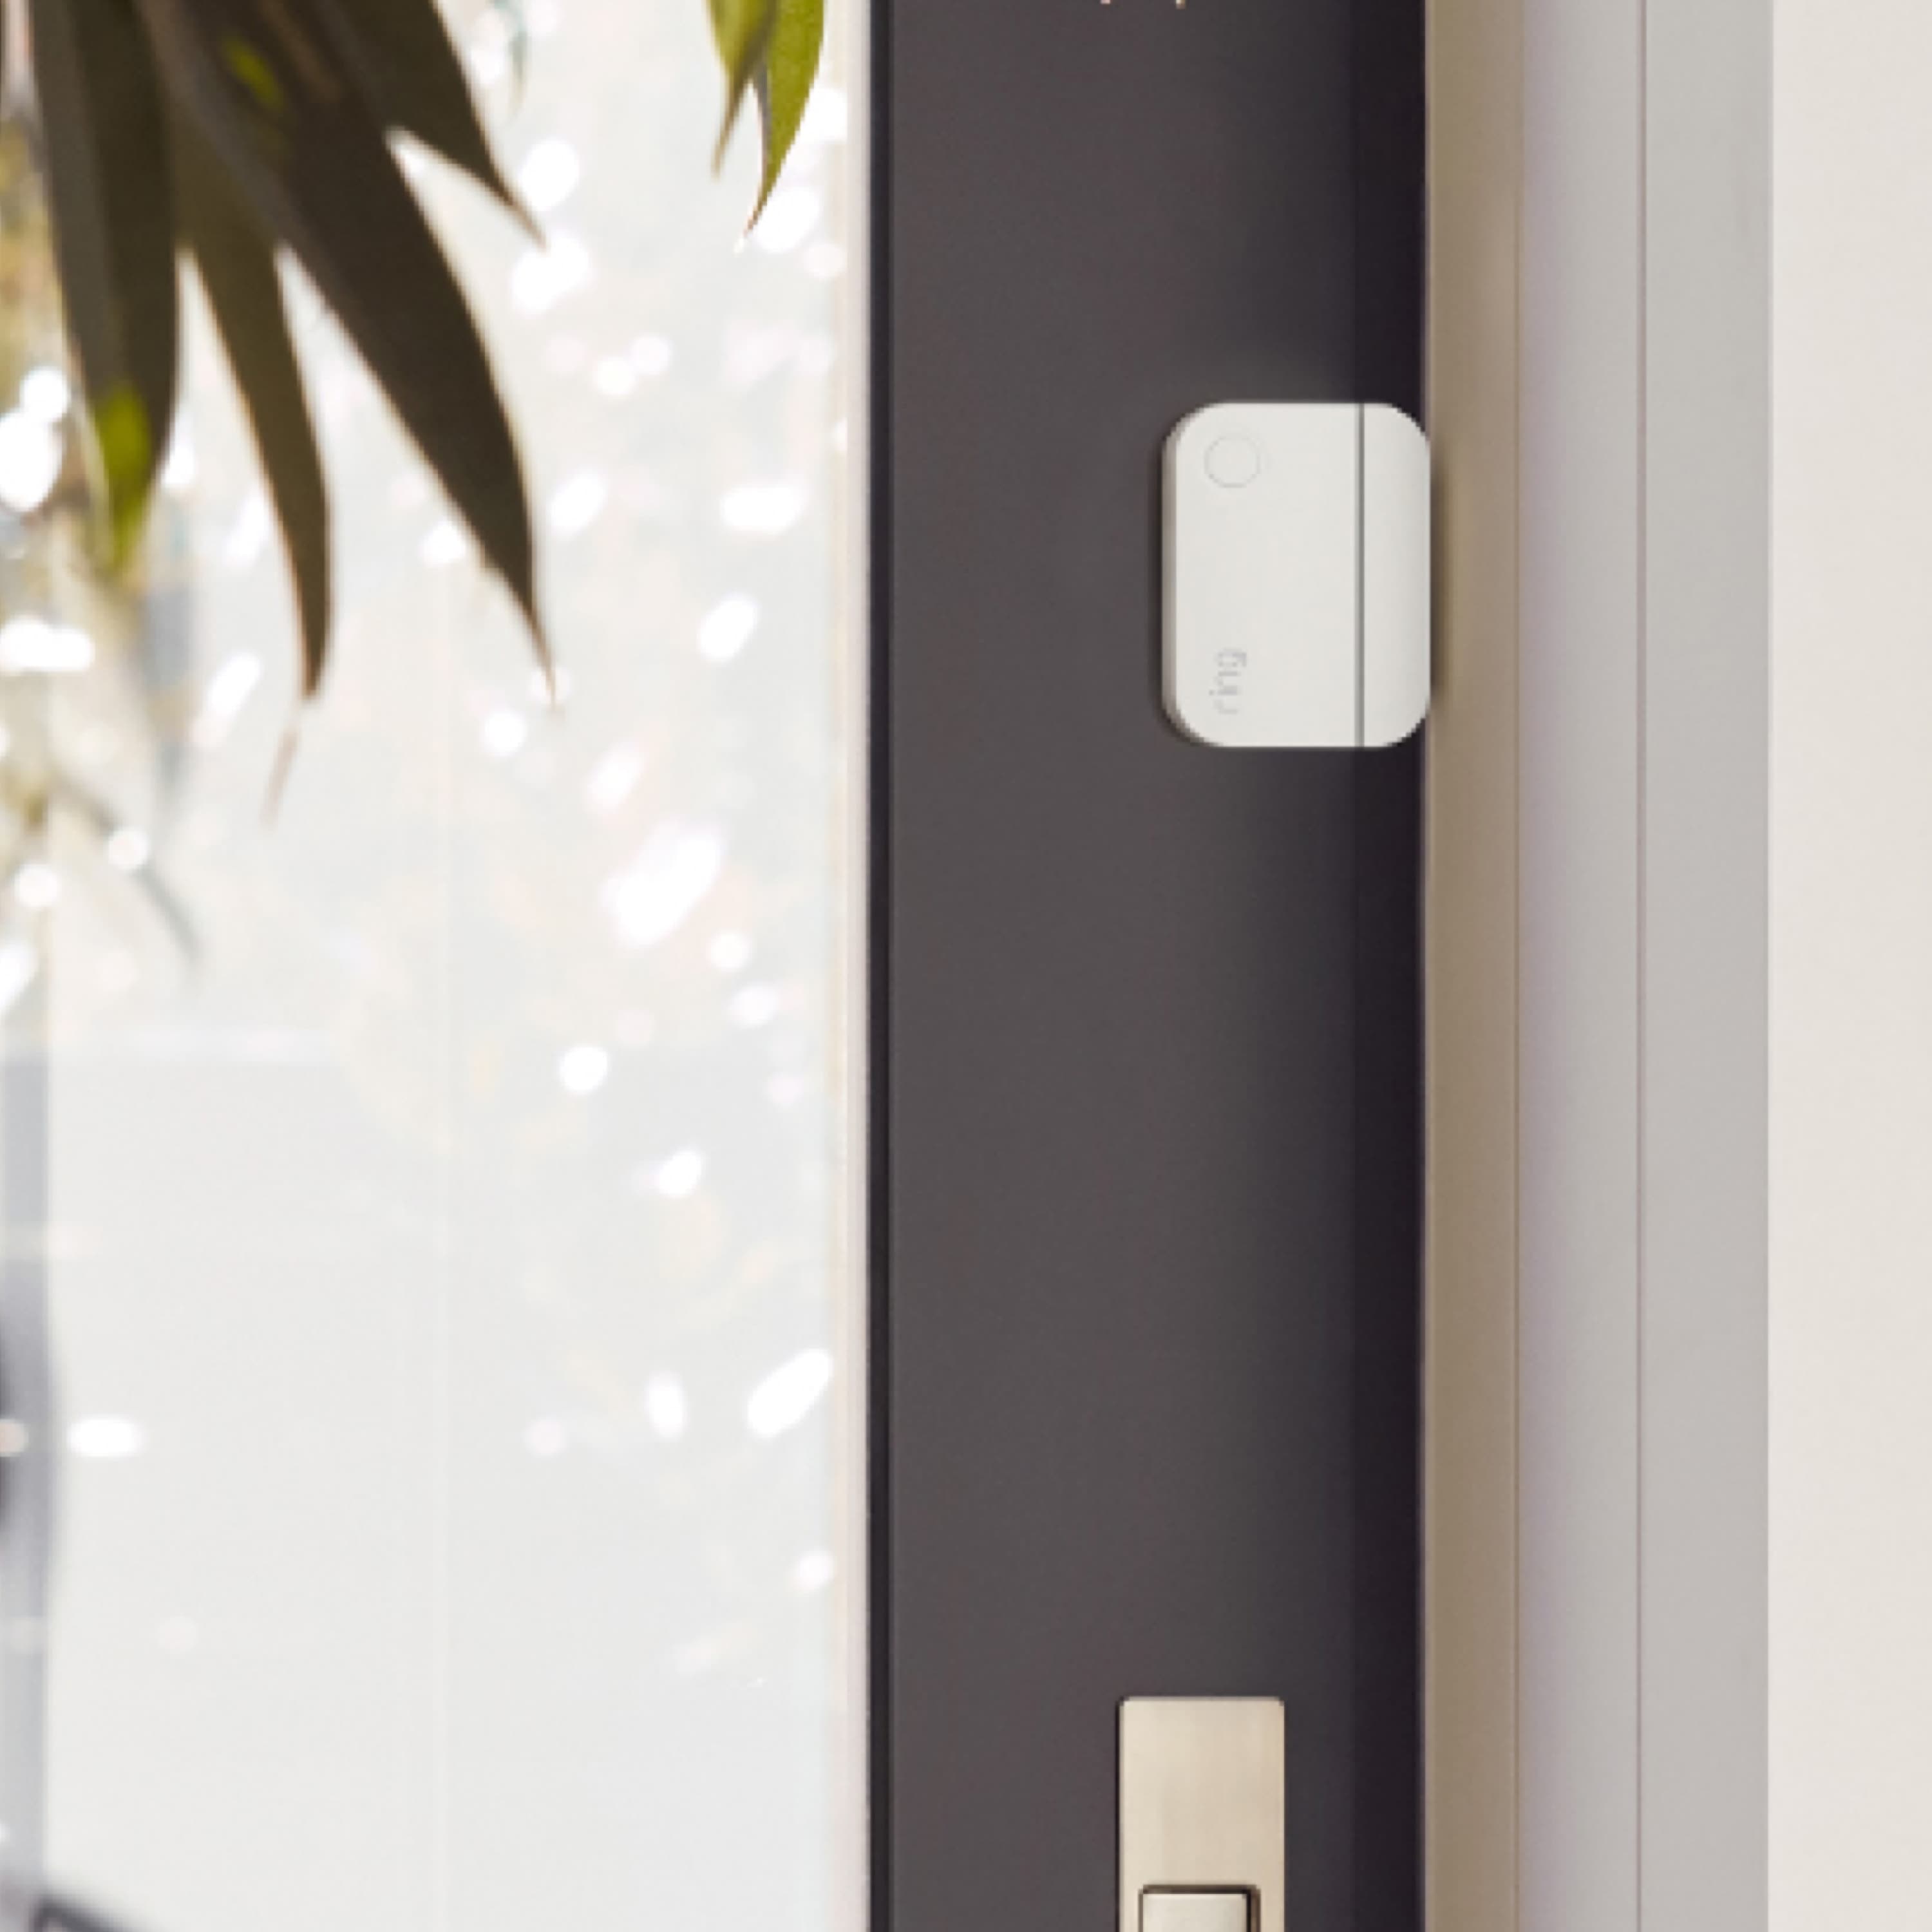 Alarm Window and Door Contact Sensor - Alarm Window and Door Contact Sensor installed on the inside of a front door with glass inlay.